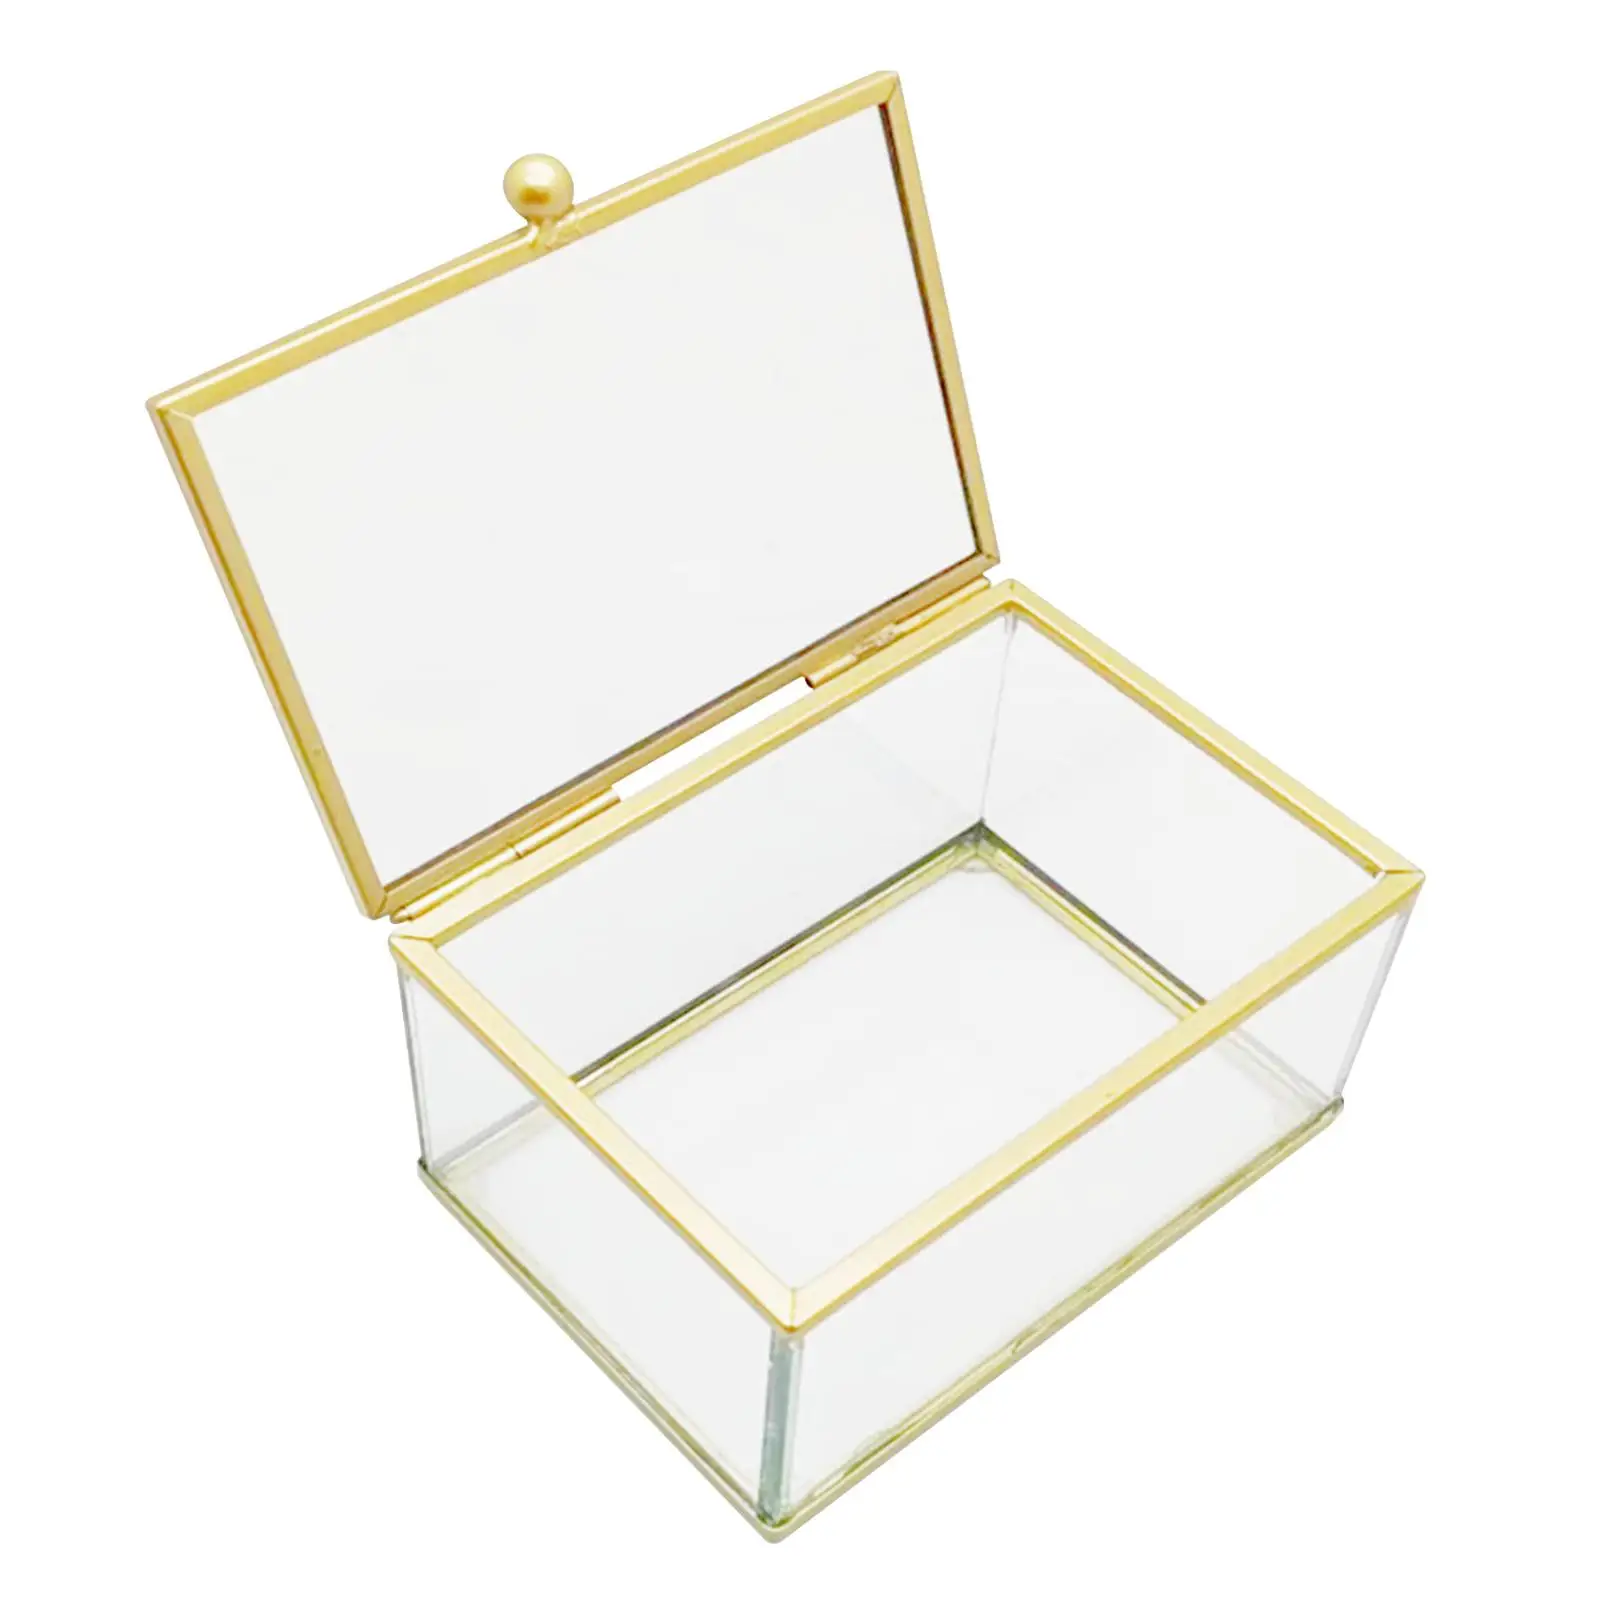 Glass Jewelry Box, Keepsake Box Storage Trinket Display Case Storage Box for Wedding